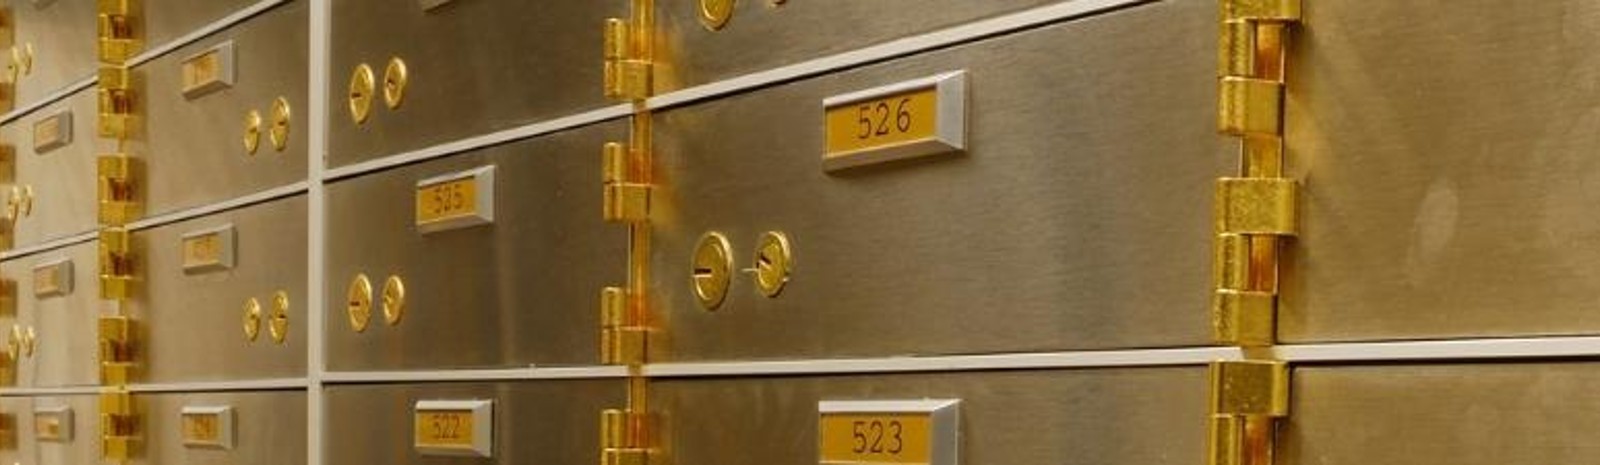 Vault safe deposit boxes.